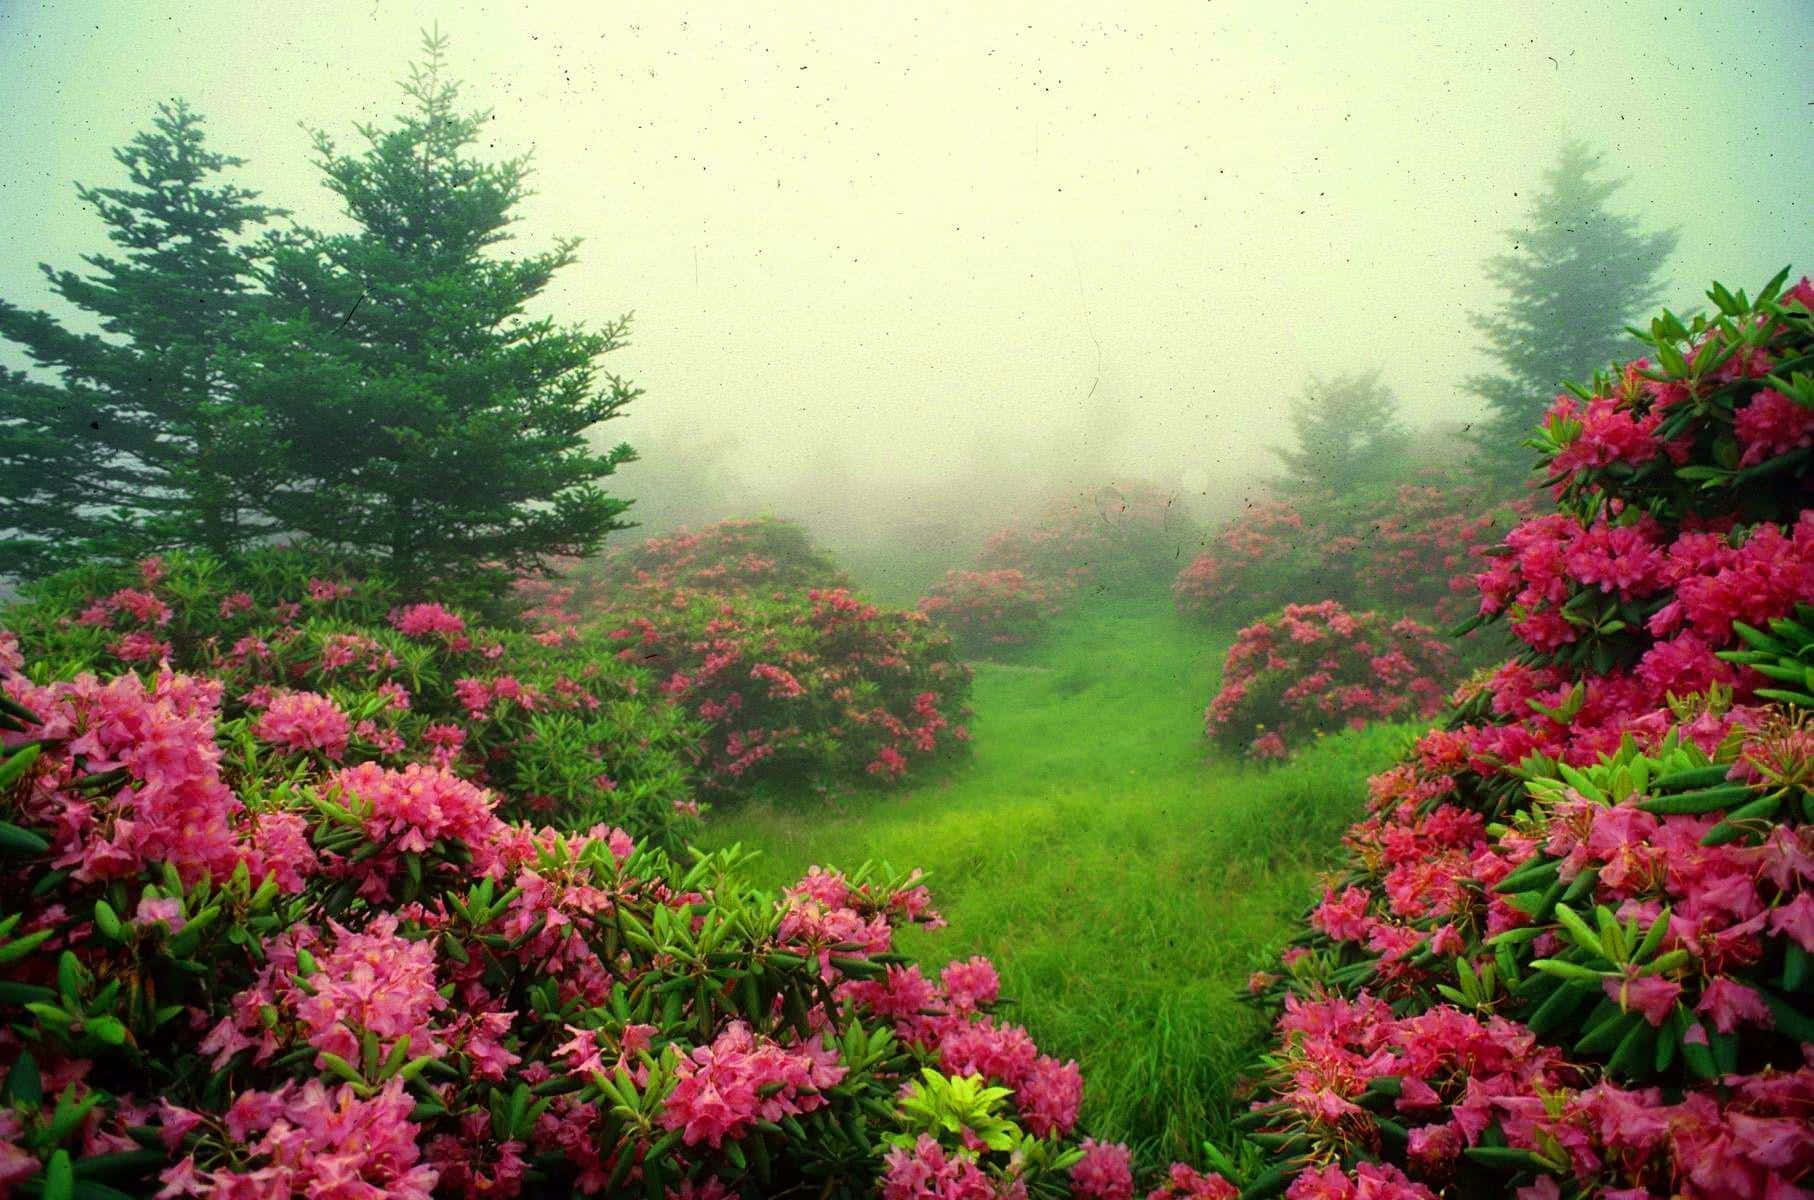 Serene Nature Garden in Full Bloom